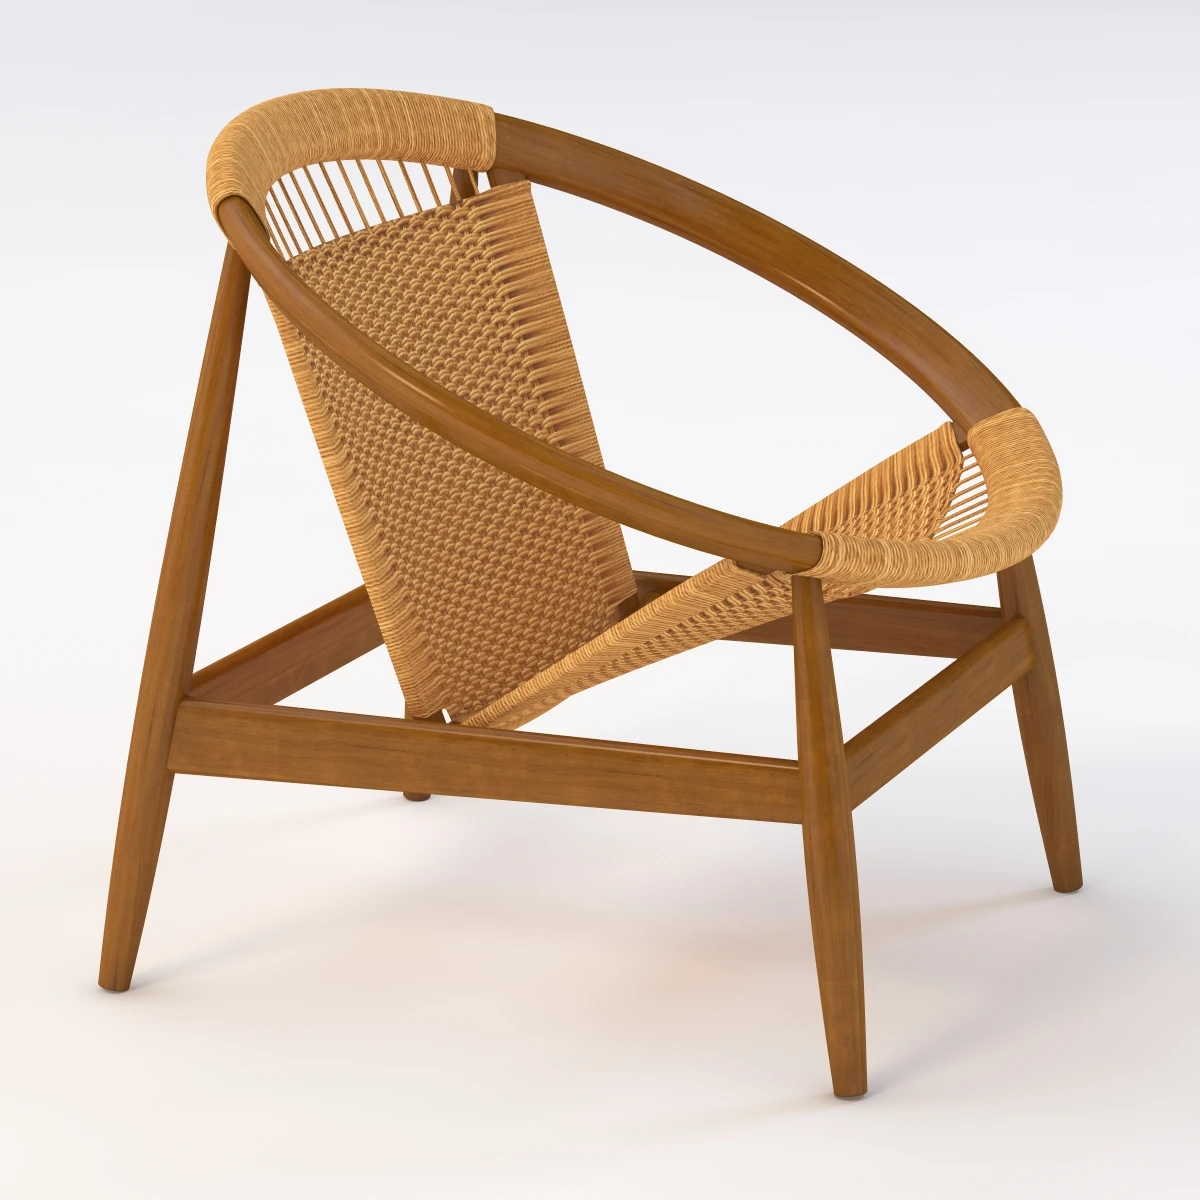 Danish Modern Ringstol Chair By Illum Wikkelso 3D Model_06